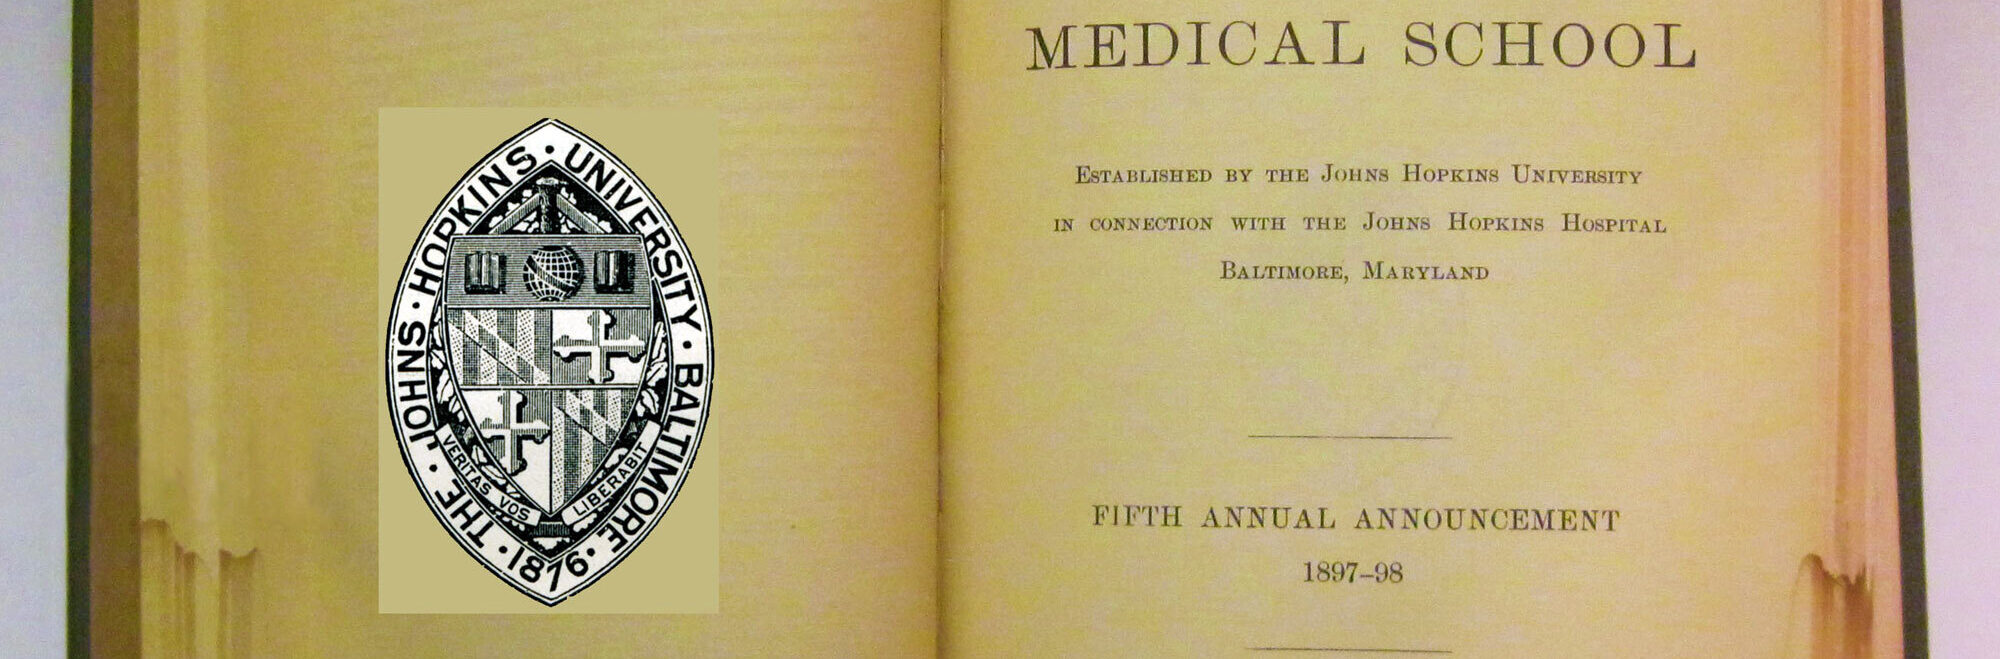 Johns Hopkins School of Medicine Catalogue 1897-1898